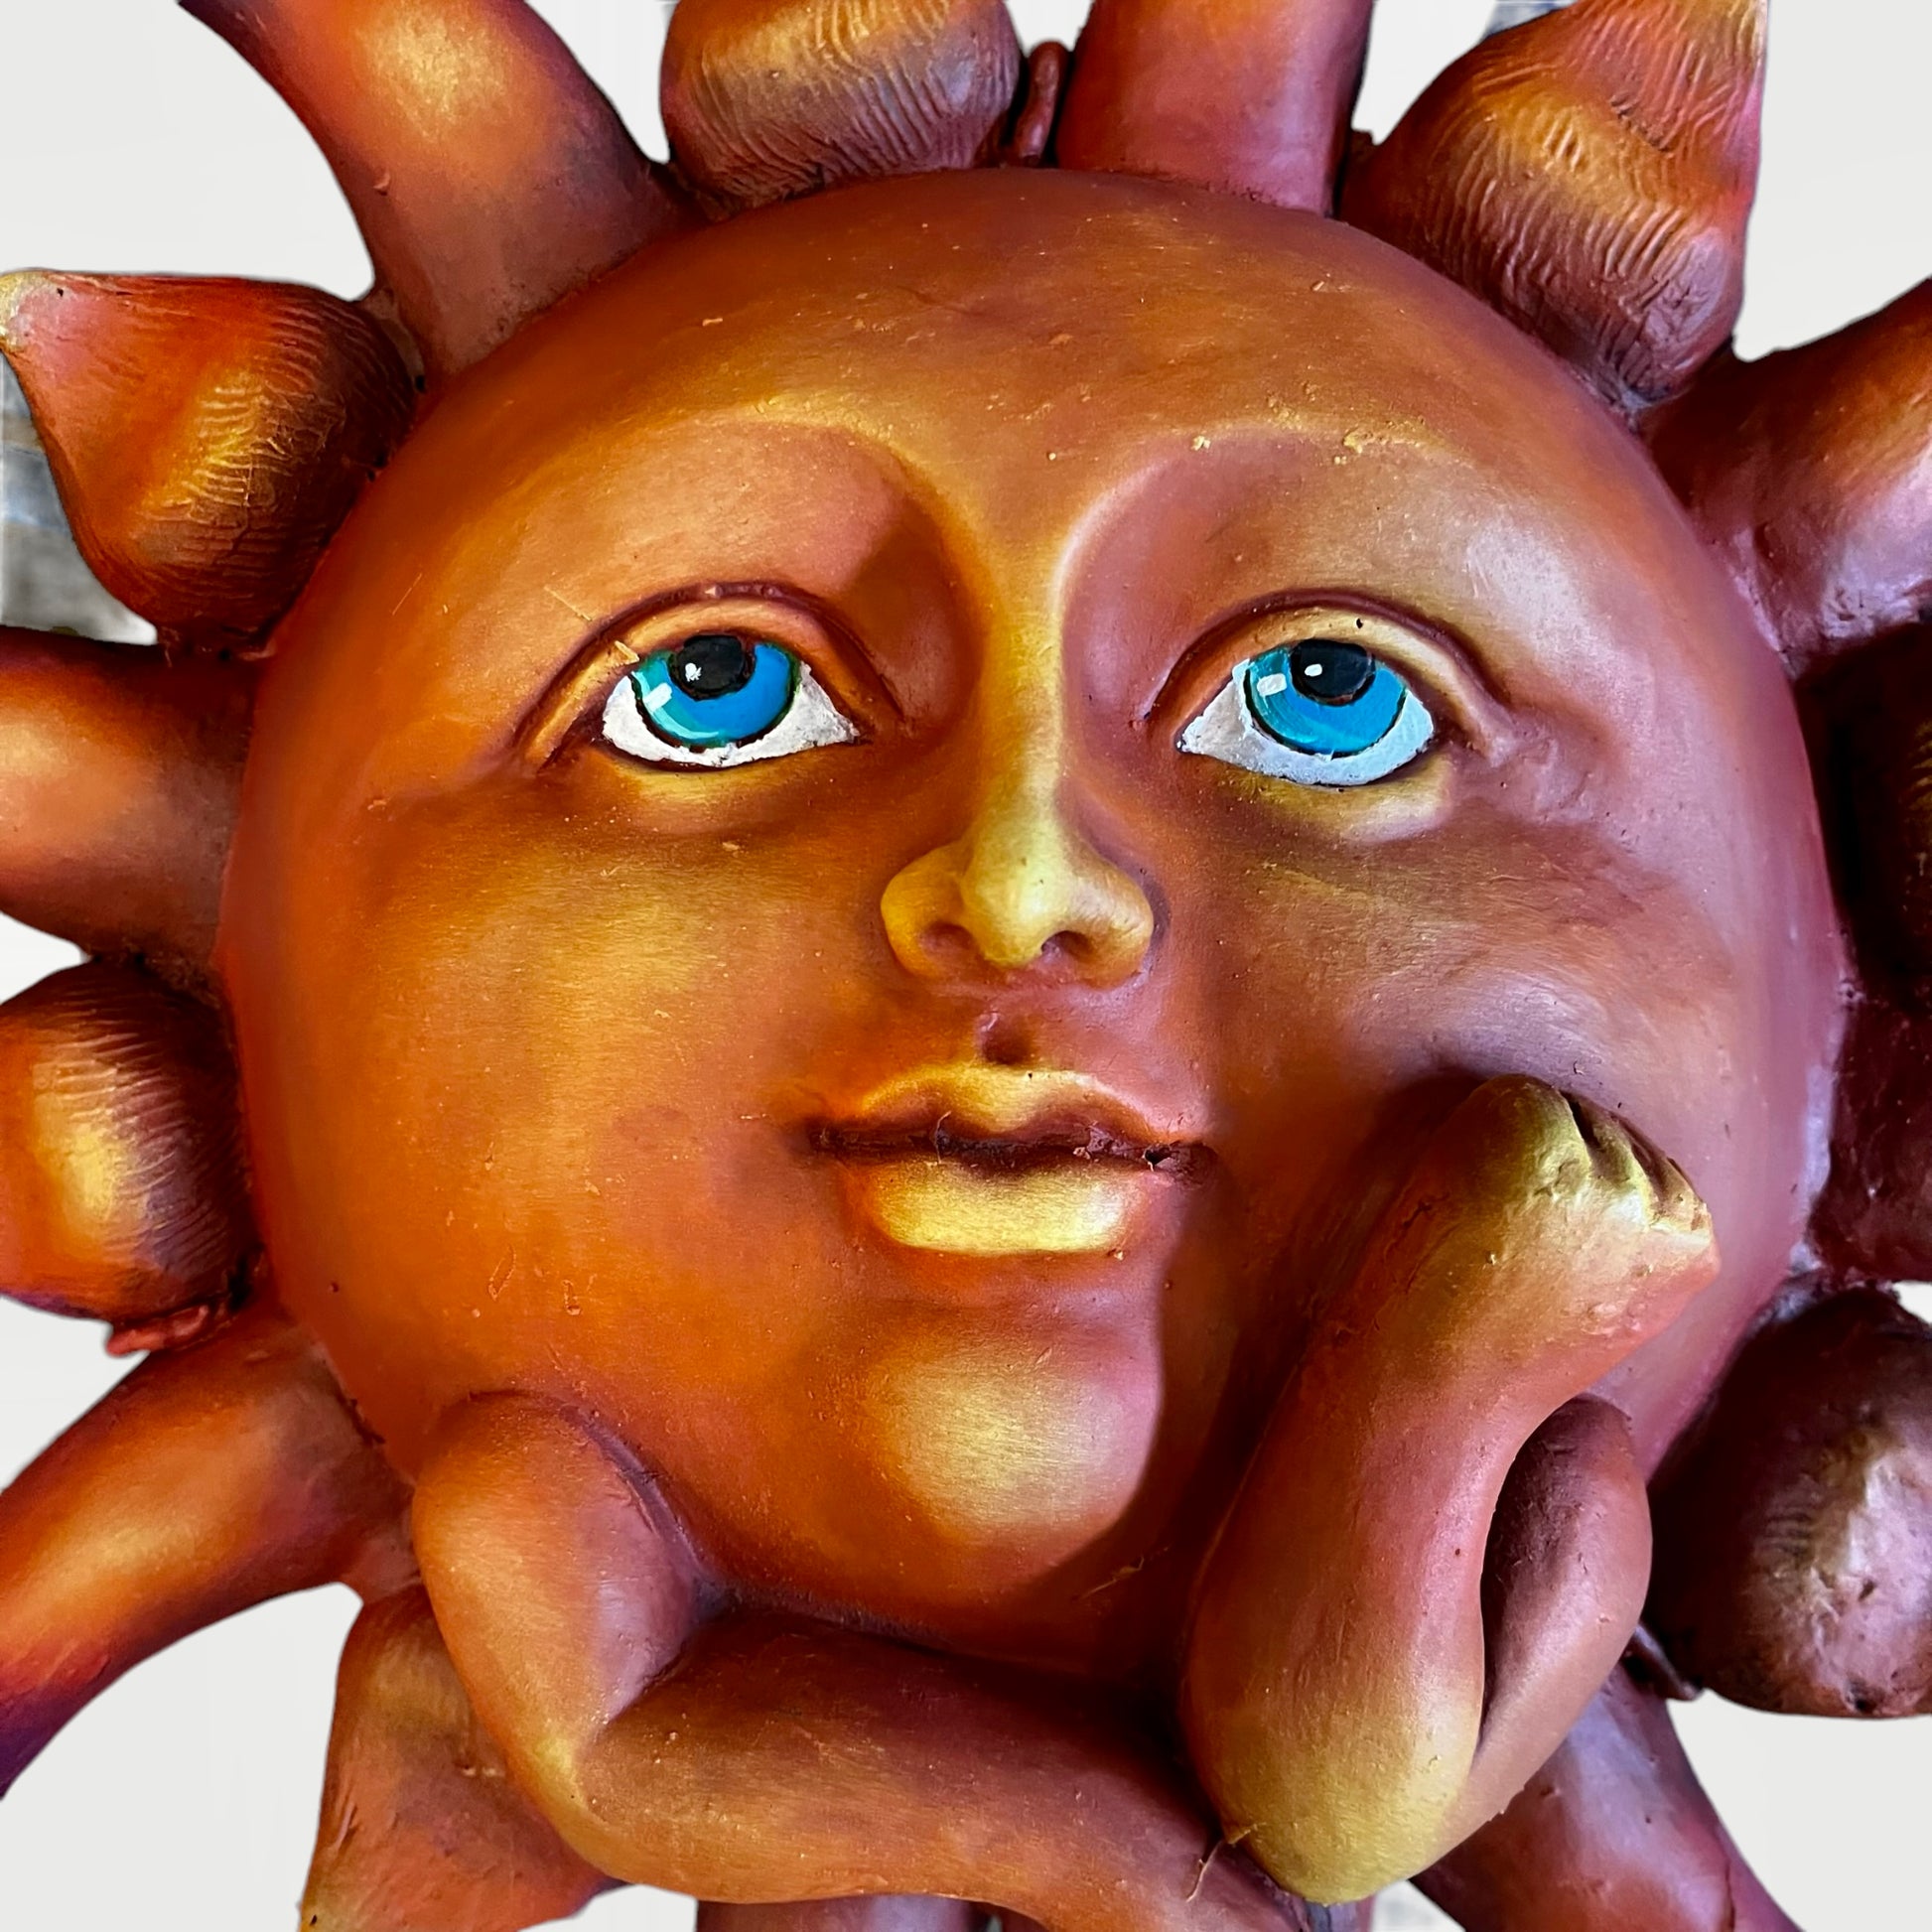 metal sun face